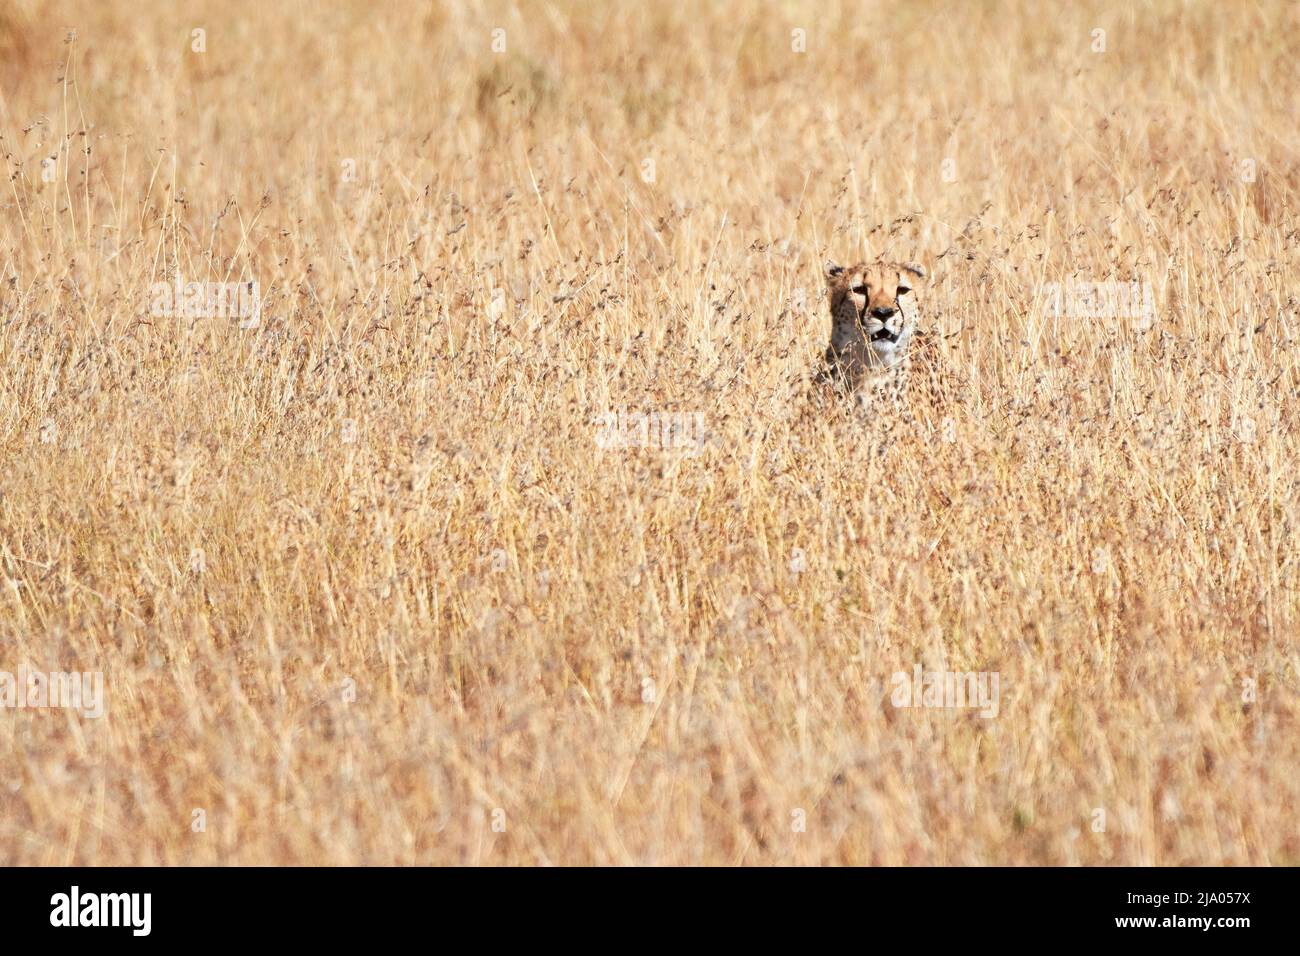 Un gatto selvatico ghepardo mimetizzato tra le praterie del Parco Nazionale del Serengeti centrale, Tanzania, Africa. Foto Stock